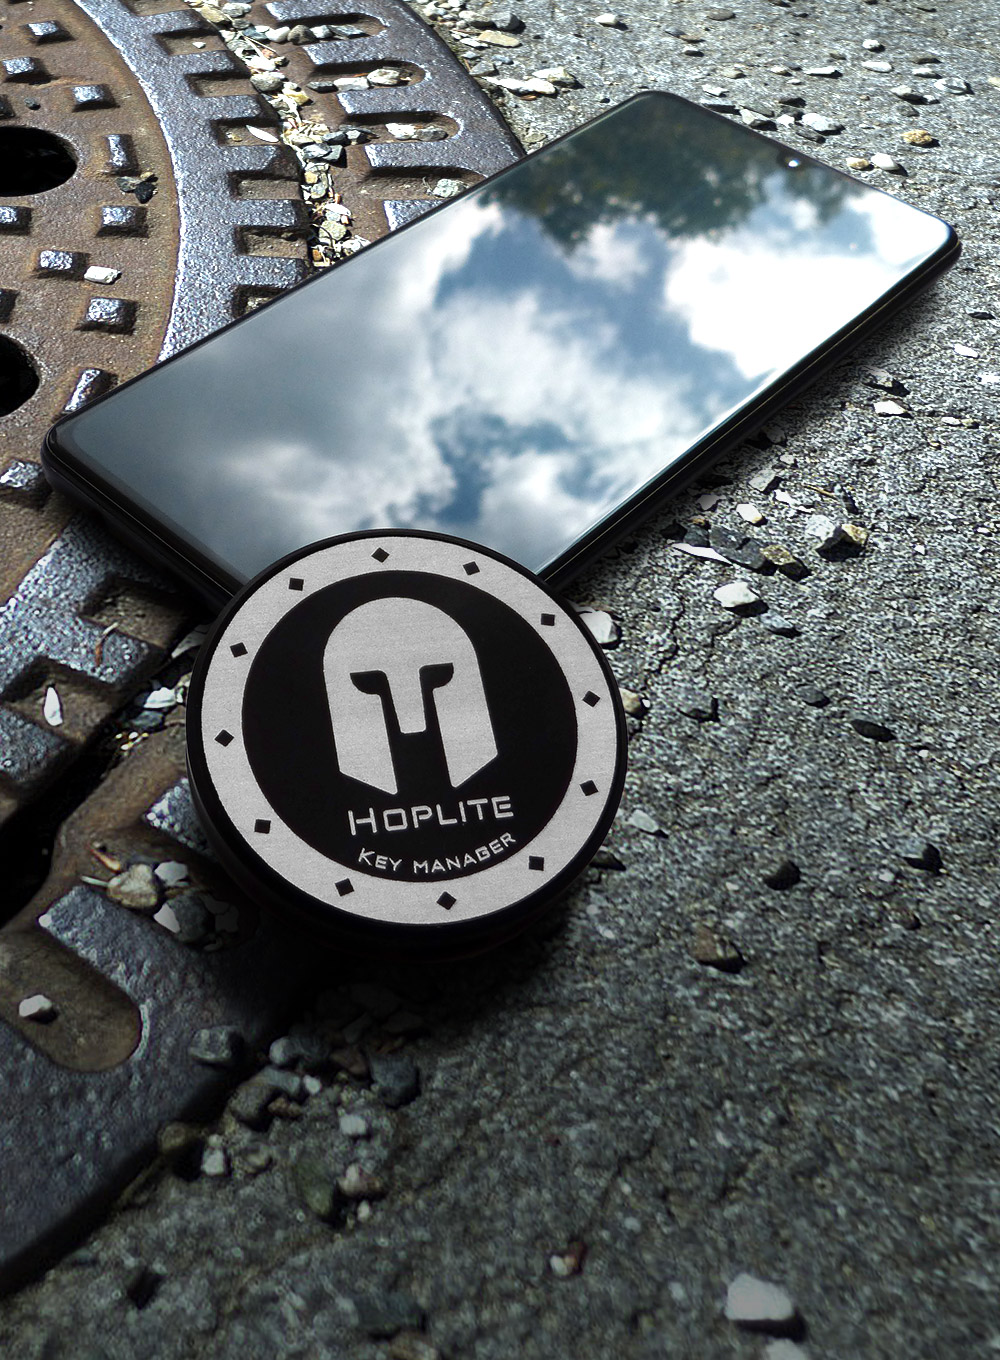 Hoplite - smartphone